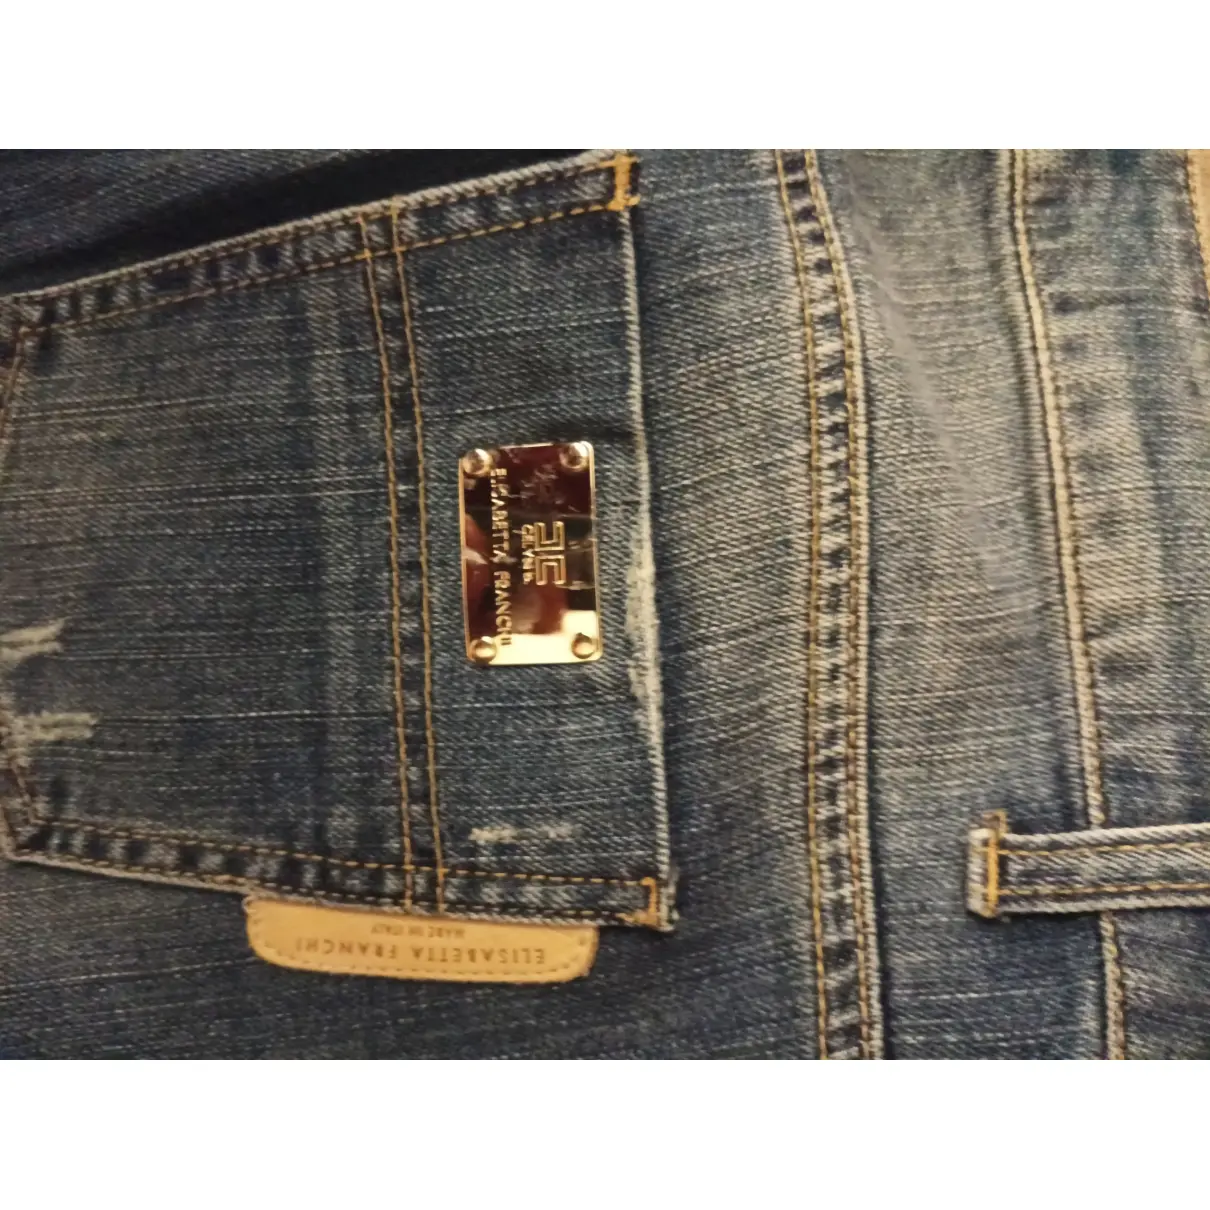 Luxury Elisabetta Franchi Jeans Women